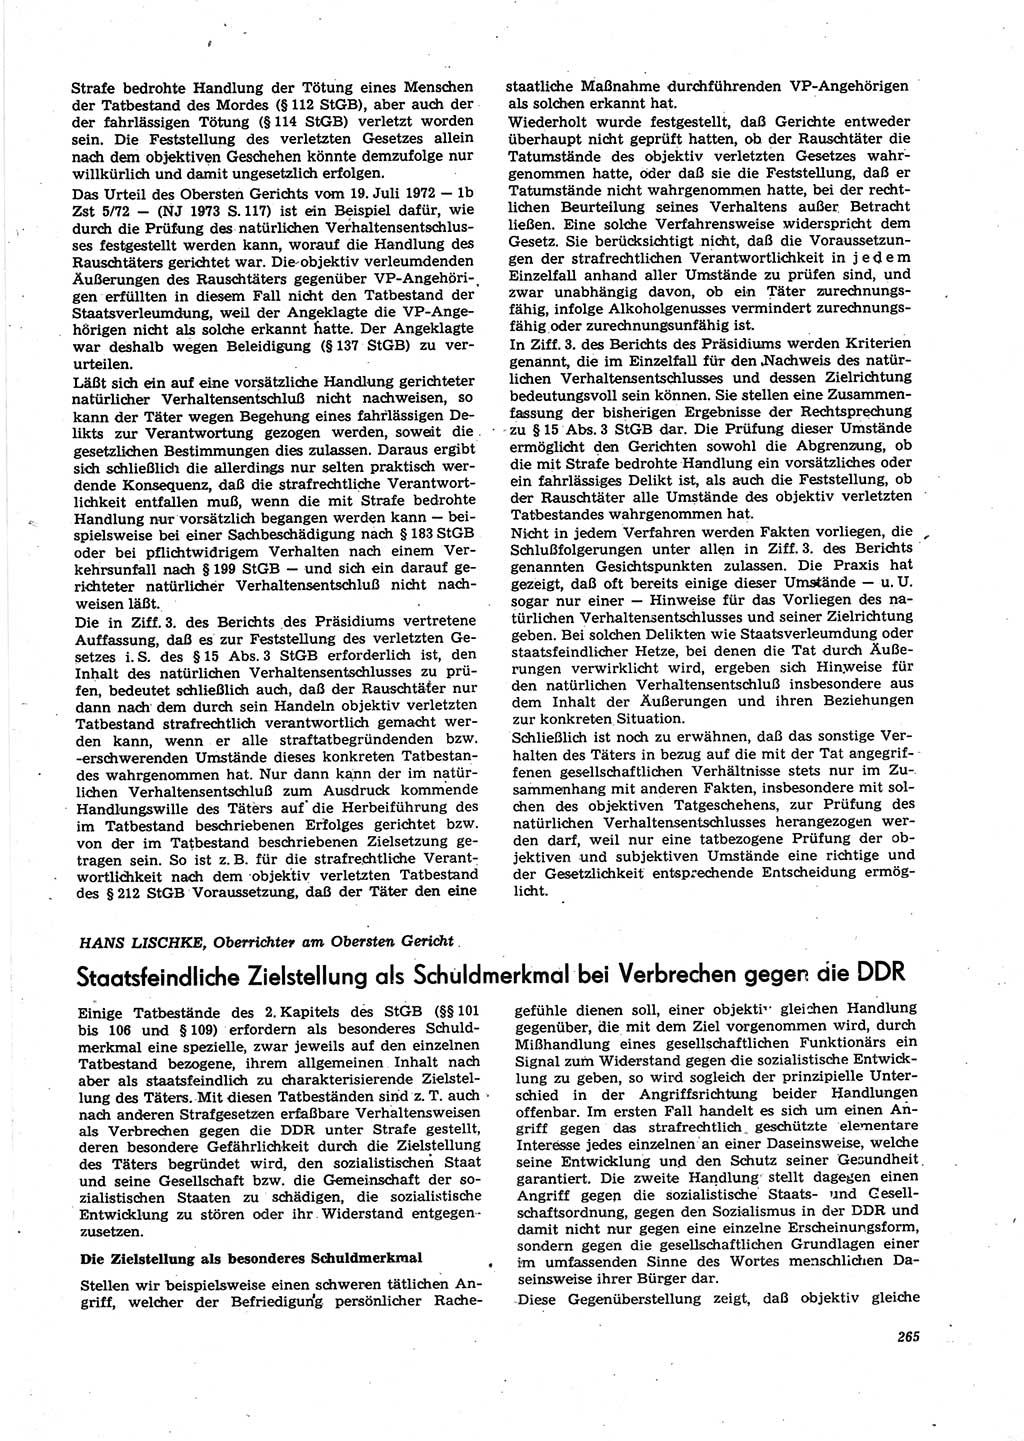 Neue Justiz (NJ), Zeitschrift für Recht und Rechtswissenschaft [Deutsche Demokratische Republik (DDR)], 27. Jahrgang 1973, Seite 265 (NJ DDR 1973, S. 265)